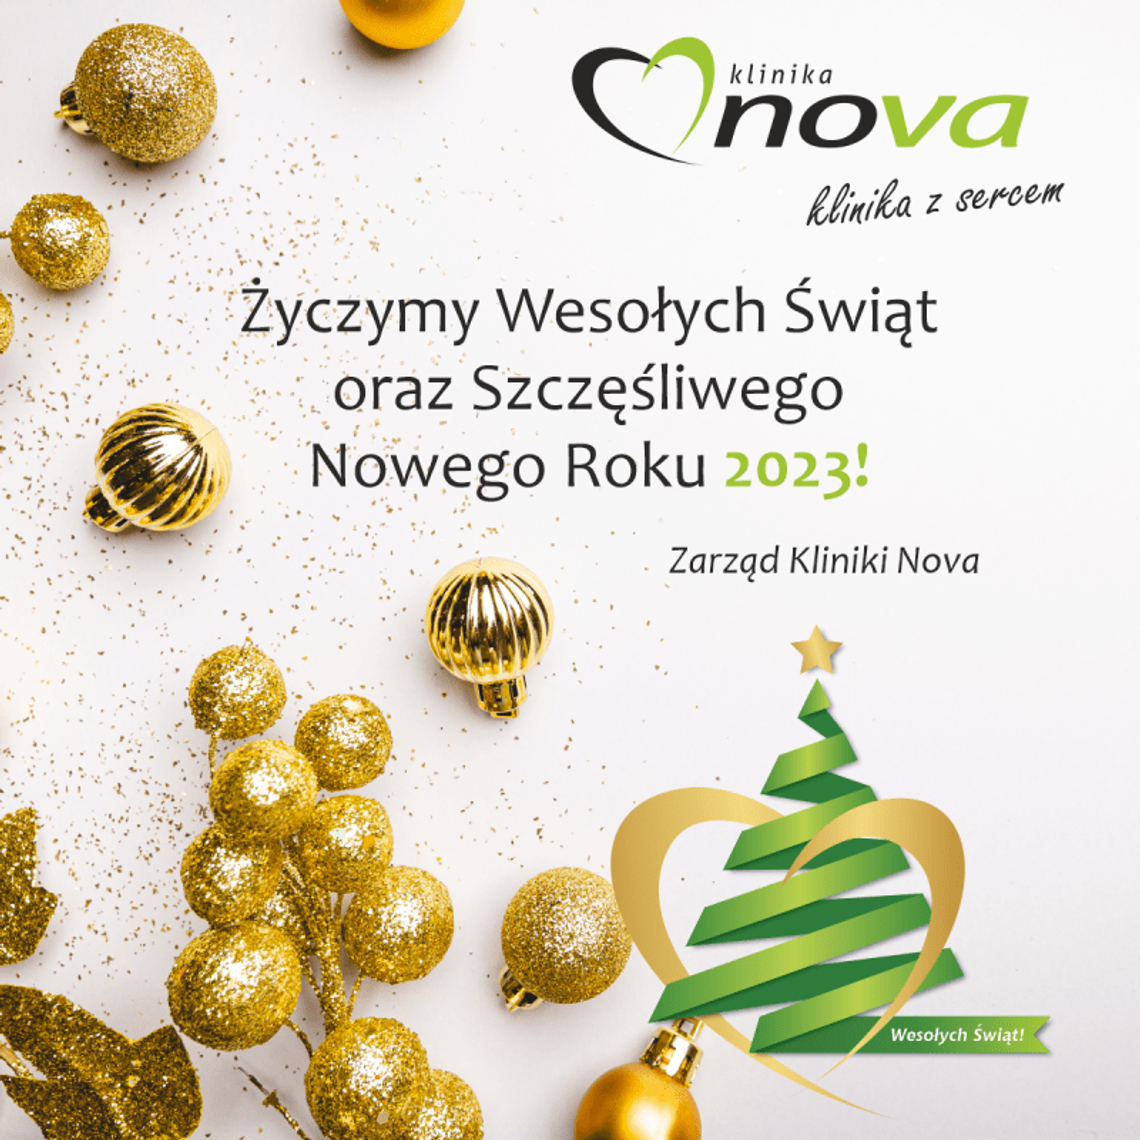 Życzenia bożonarodzeniowe i noworoczne Kliniki Nova dla Czytelników KK24.pl